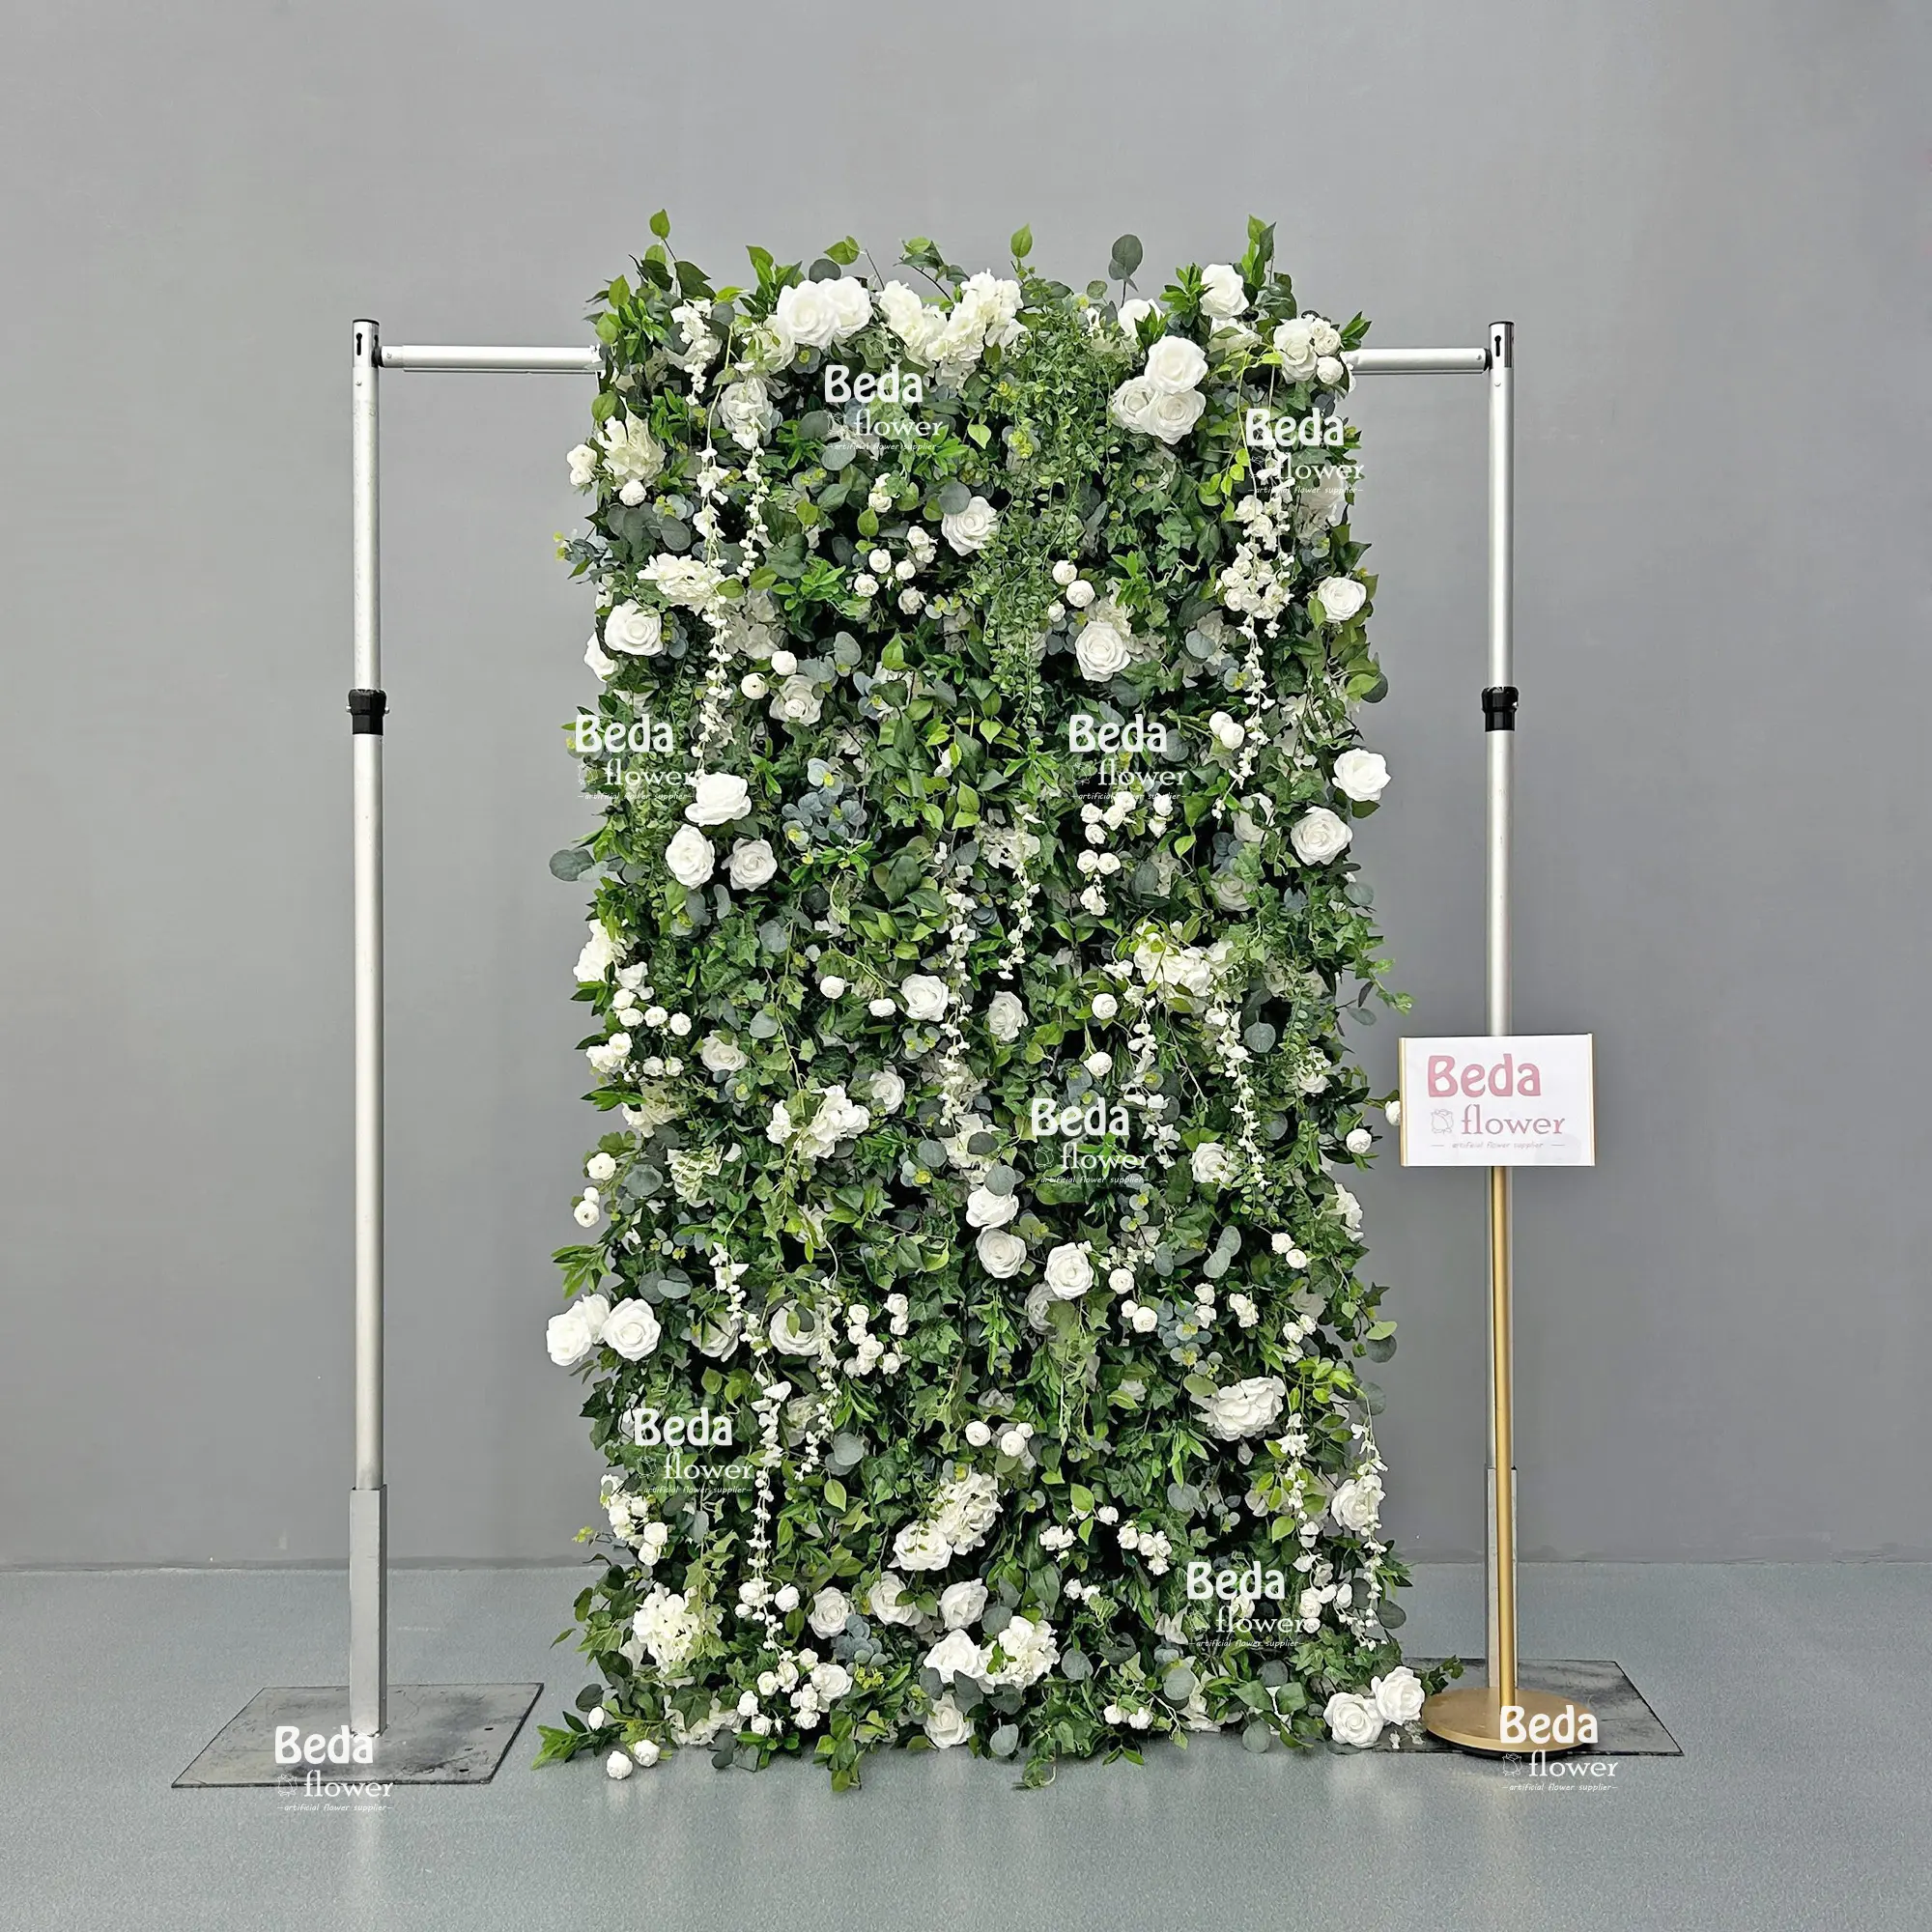 베다 꽃 웨딩 배경 녹색 버드 나무 잎 심비듐과 화이트 로즈 패브릭 천 꽃 벽